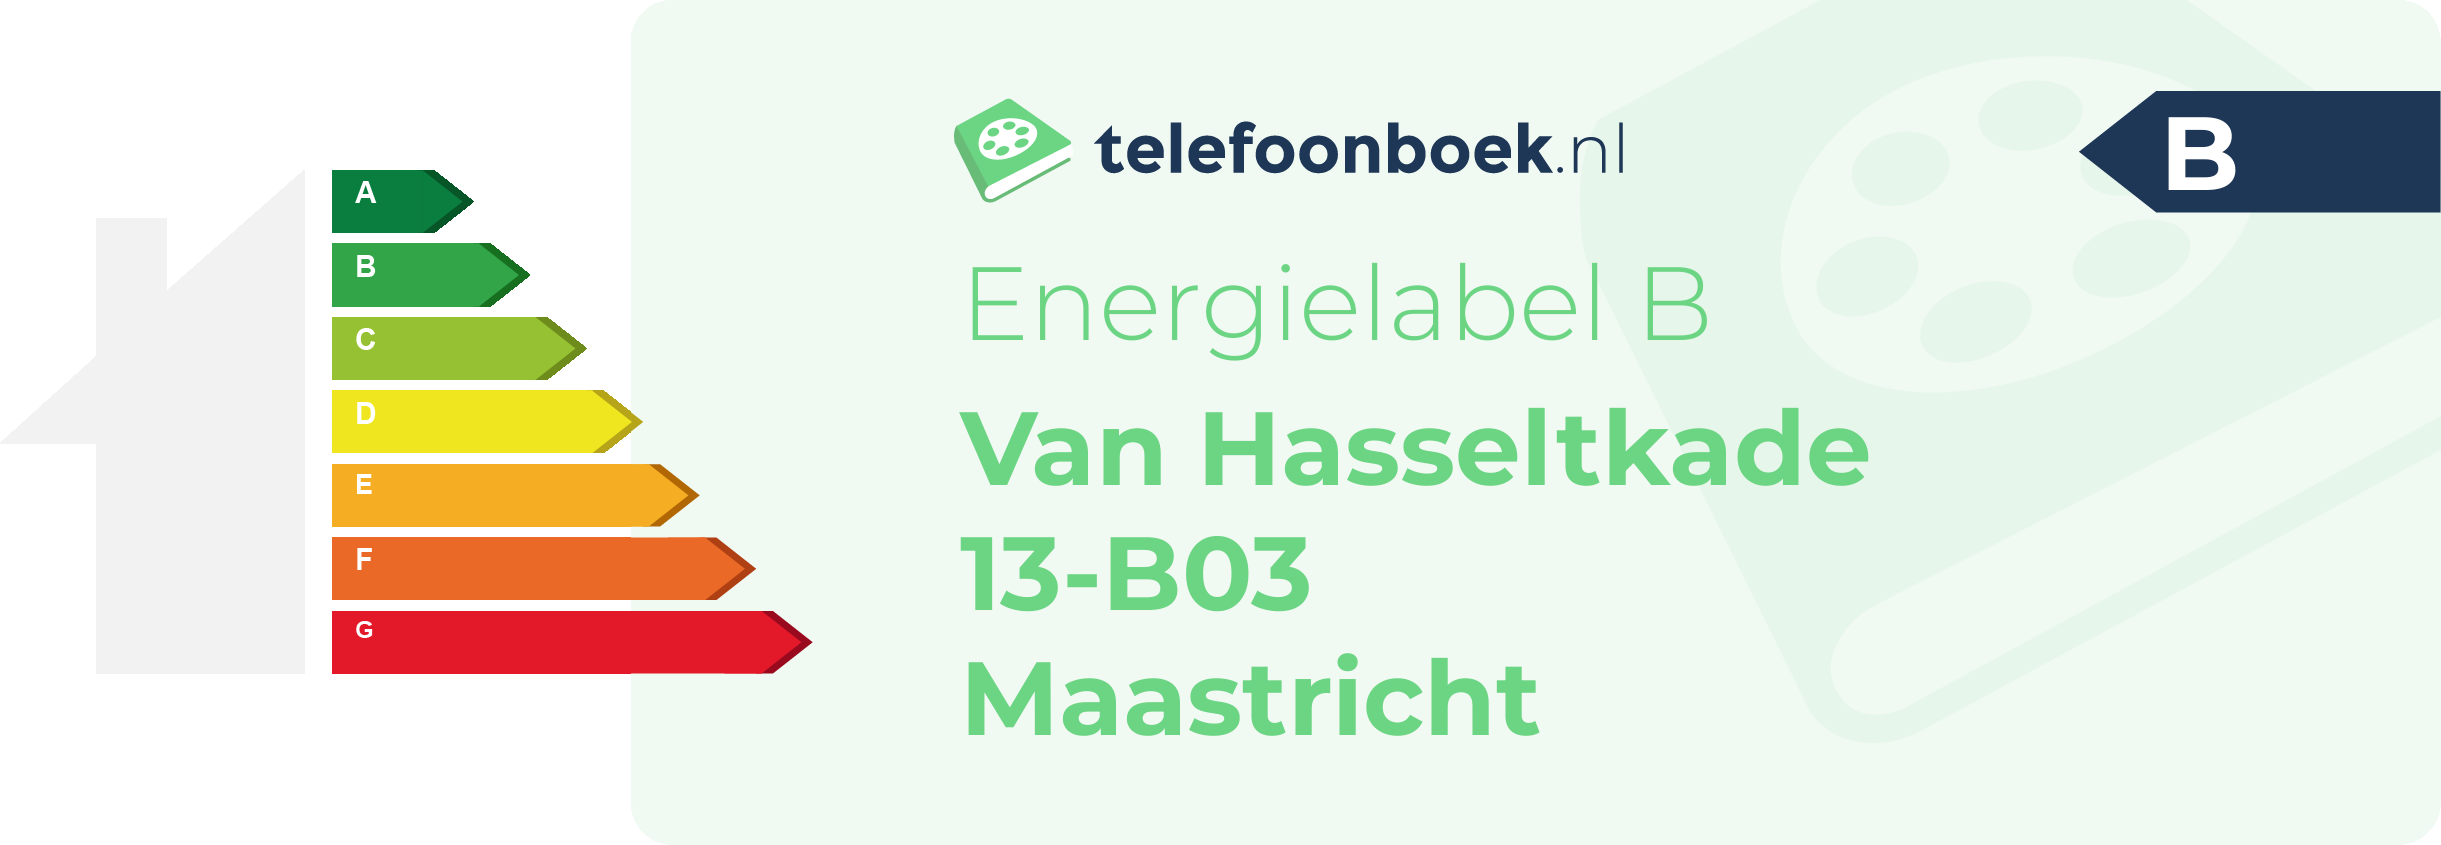 Energielabel Van Hasseltkade 13-B03 Maastricht